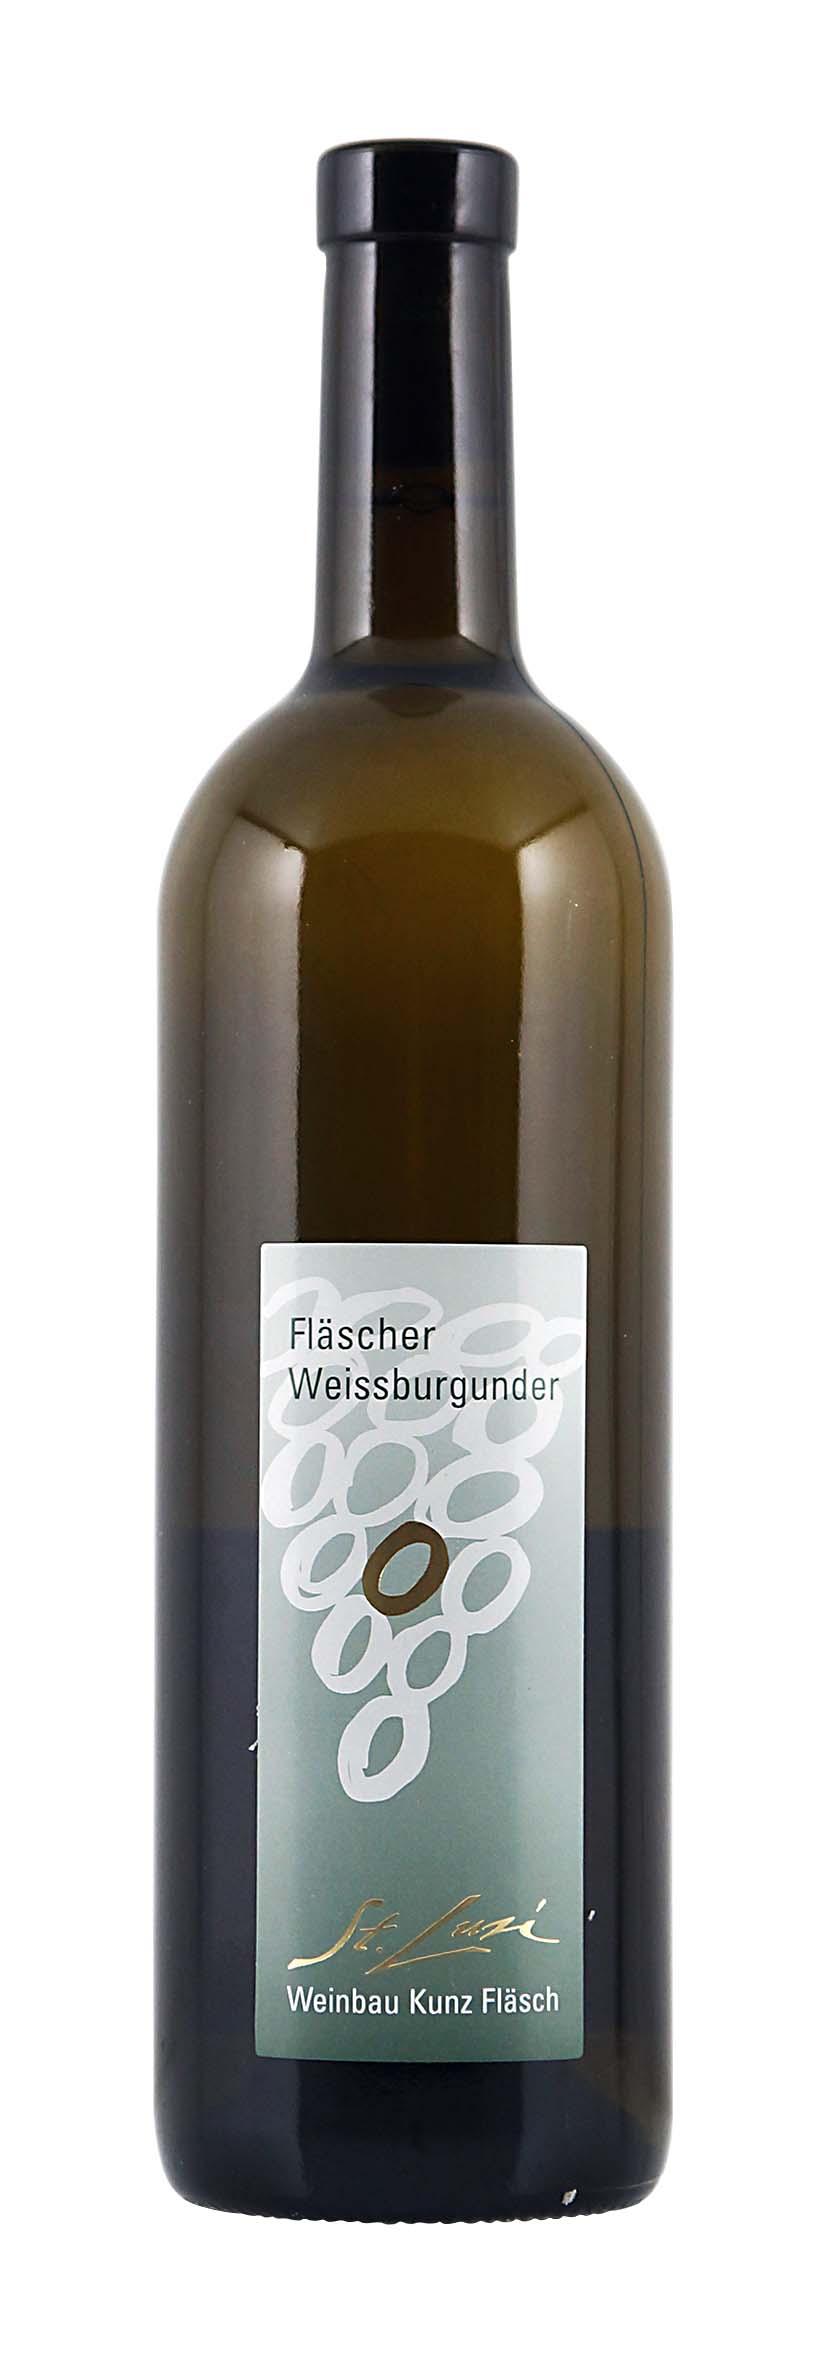 Graubünden AOC Fläscher Weissburgunder 2012